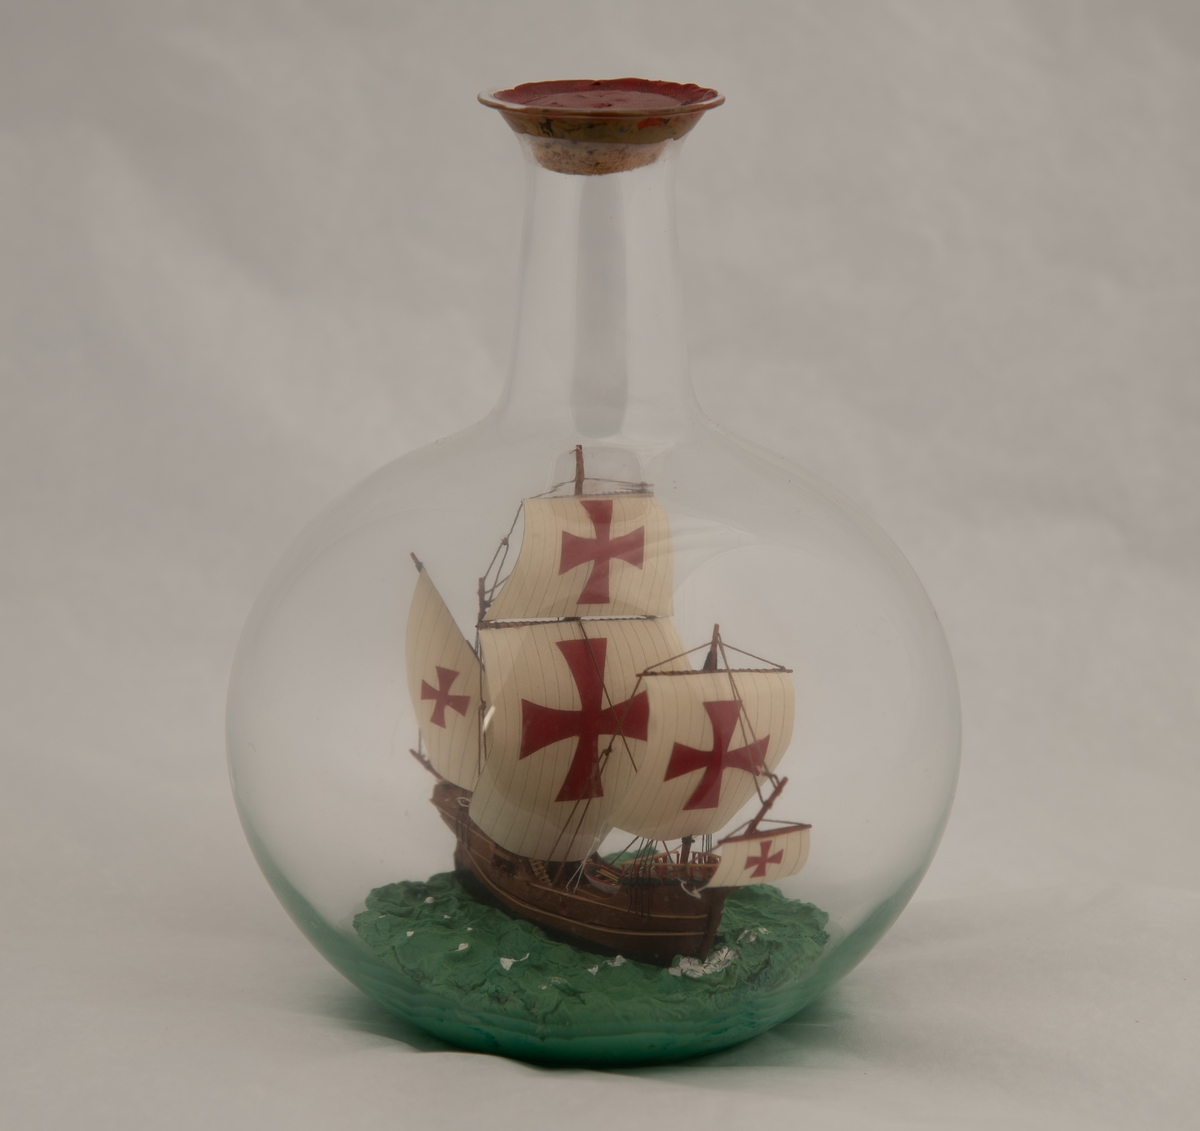 Flaskeskute i kuleformet flaske. Skuta er: "Santa Maria" , 1492 , en karakk , som var flaggskipet til Columbus.  Brunt skrog med lyse striper , seil med malteserkors i rødt.